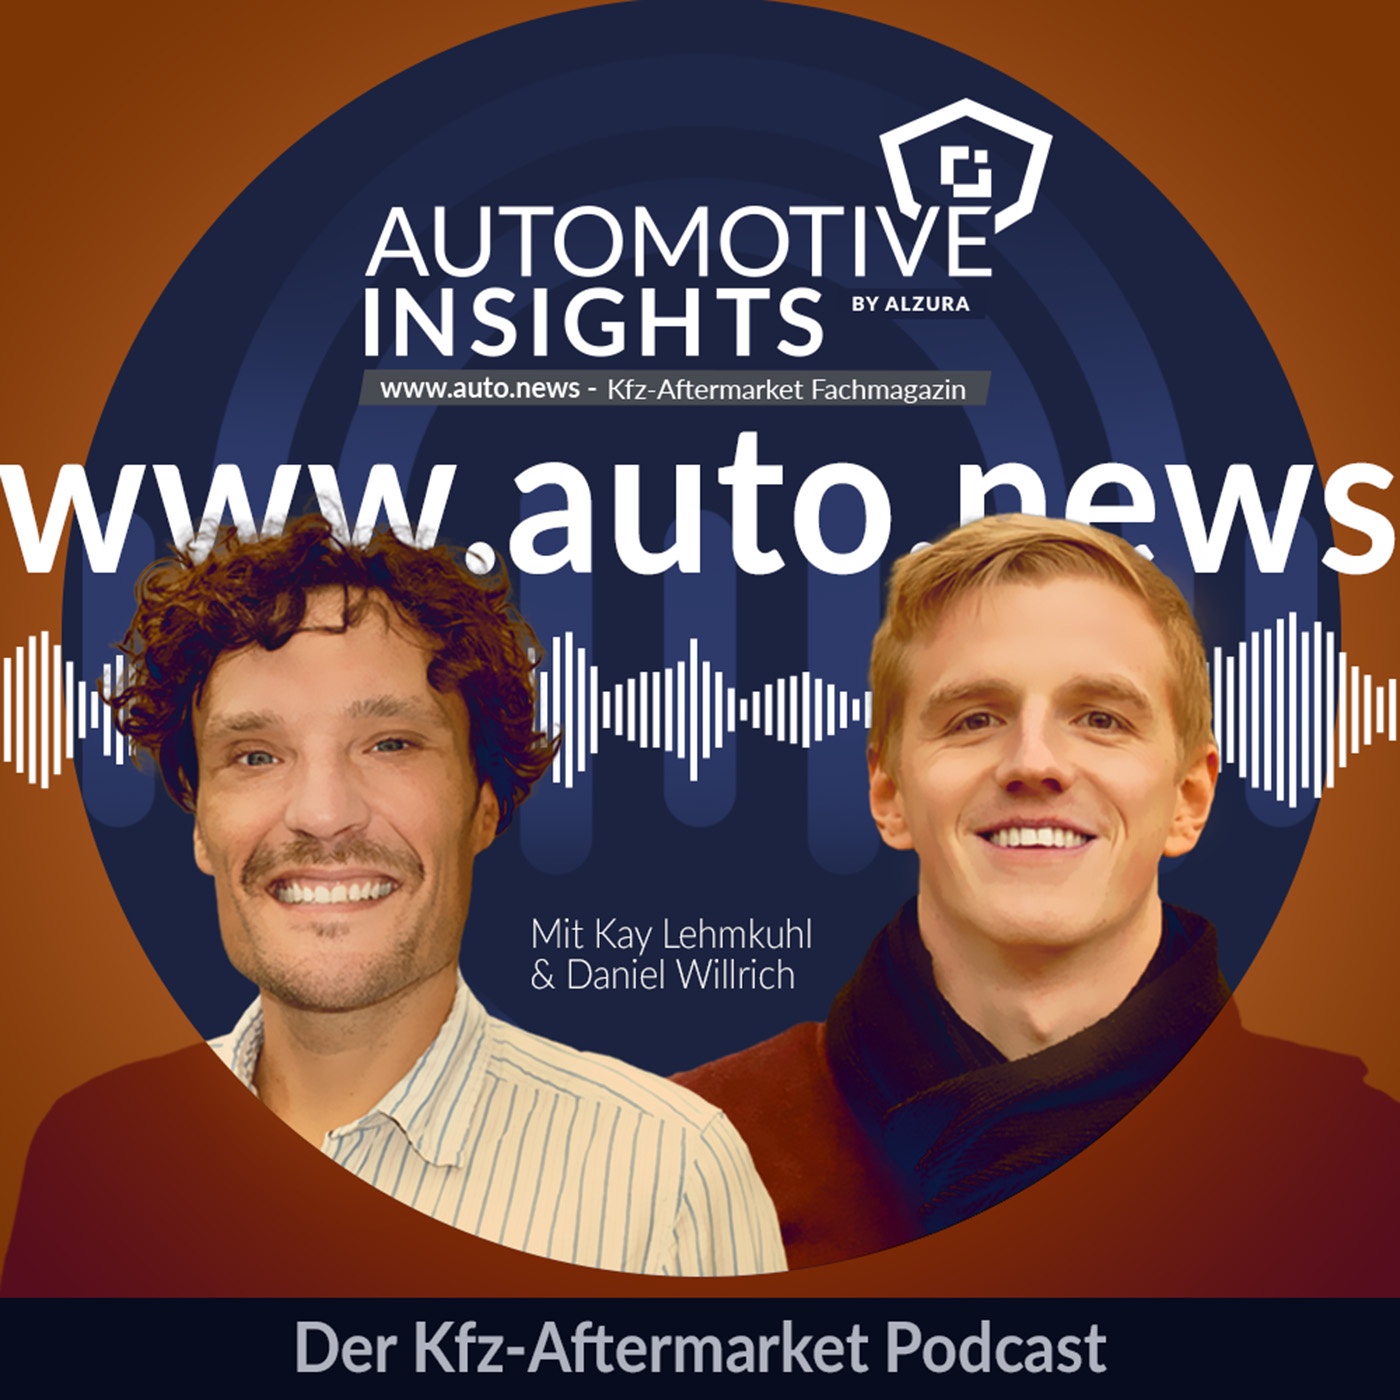 Automotive Insights Magazin - www.auto.news - Podcast